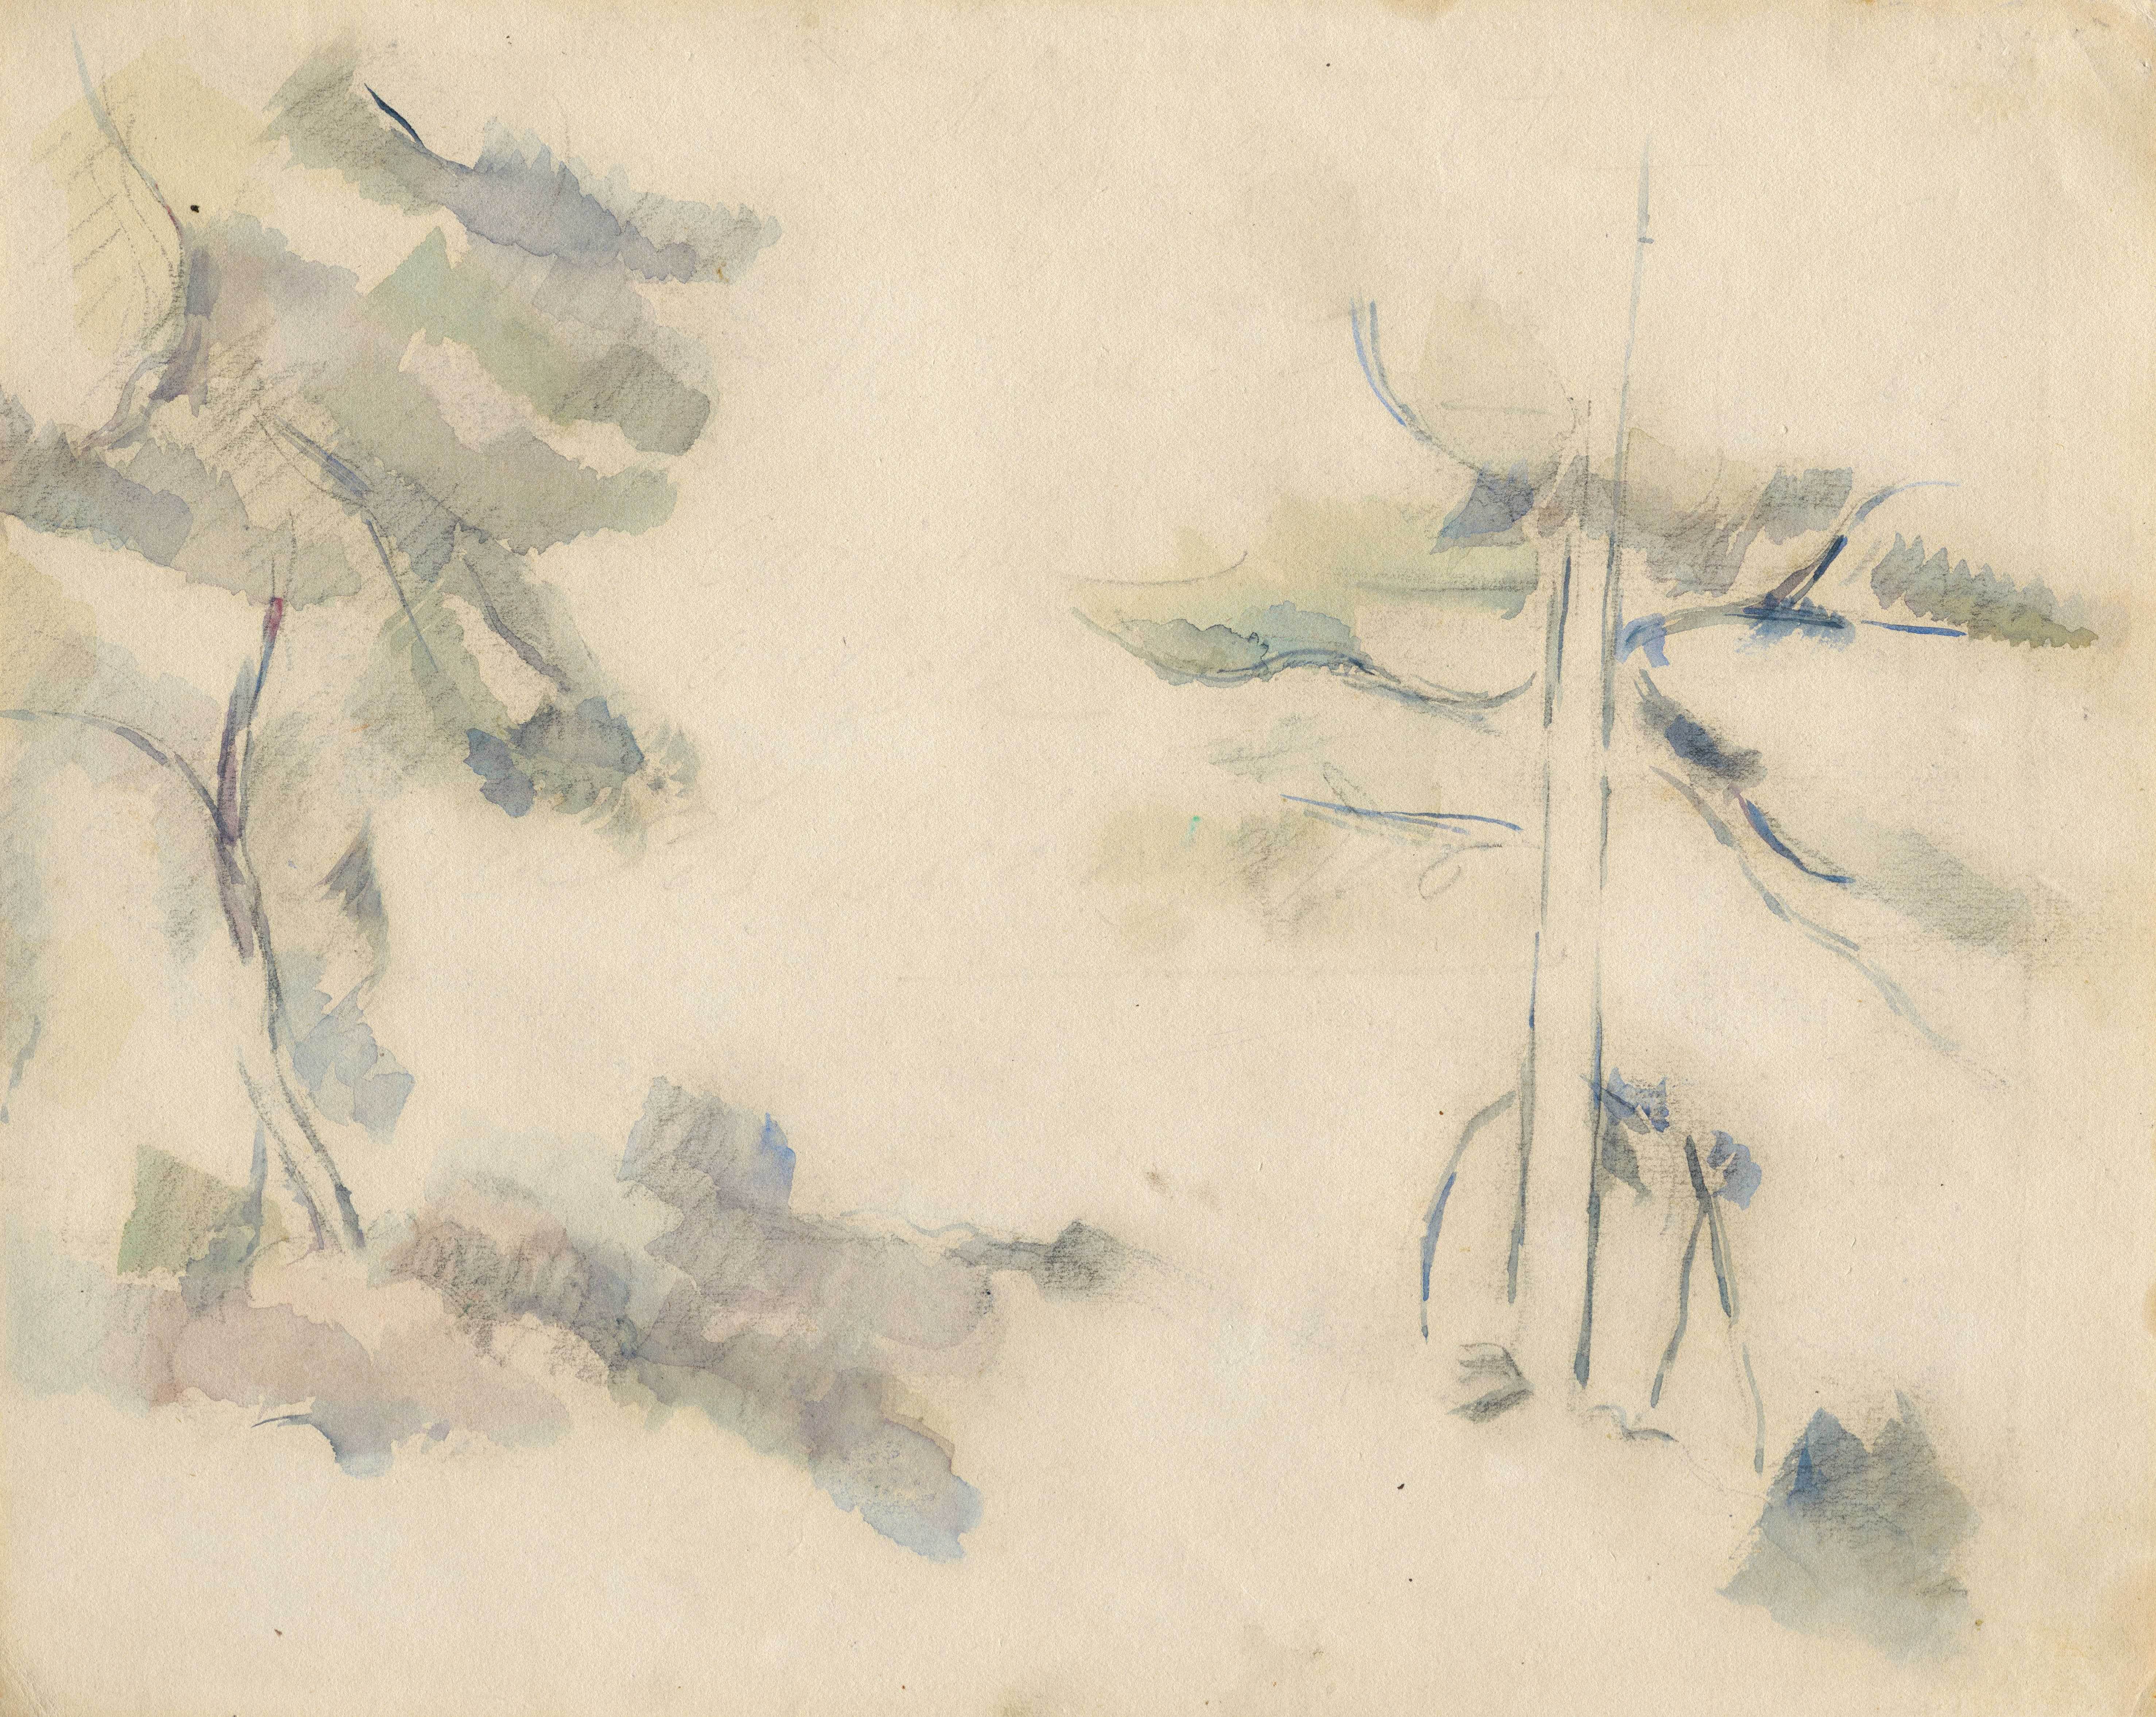 山水与风景-无用空间展览作品图-两棵松TwoPines保罗·塞尚PaulCézanne水彩画Watercolorpainting20.9×26.1cm1890